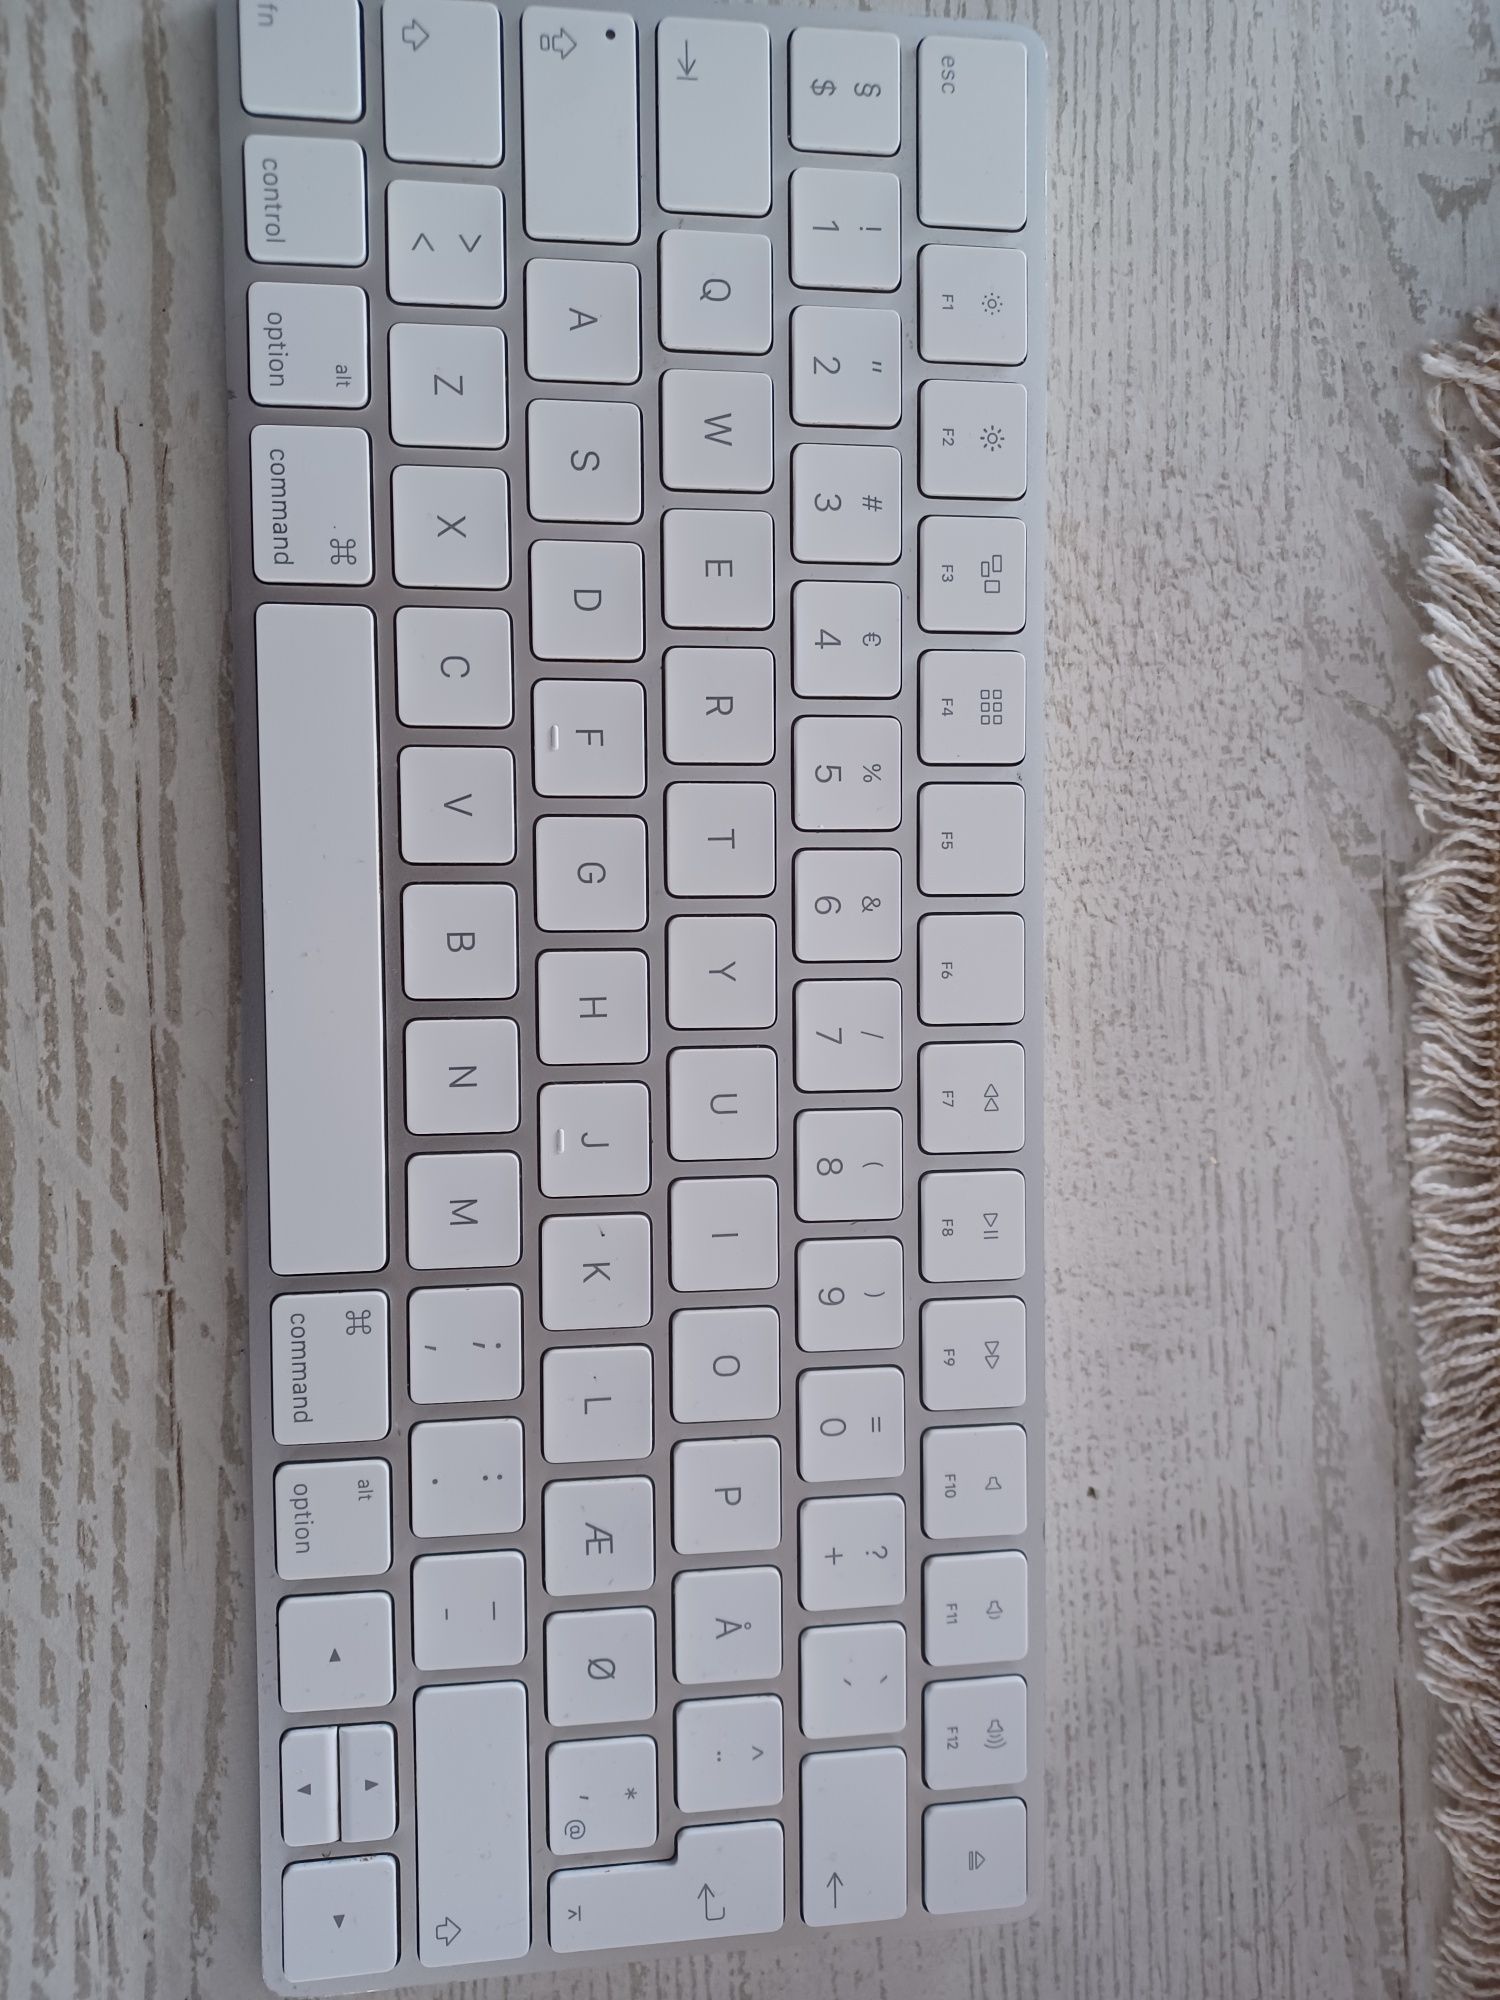 Tastatura Apple 2 cu încărcare.